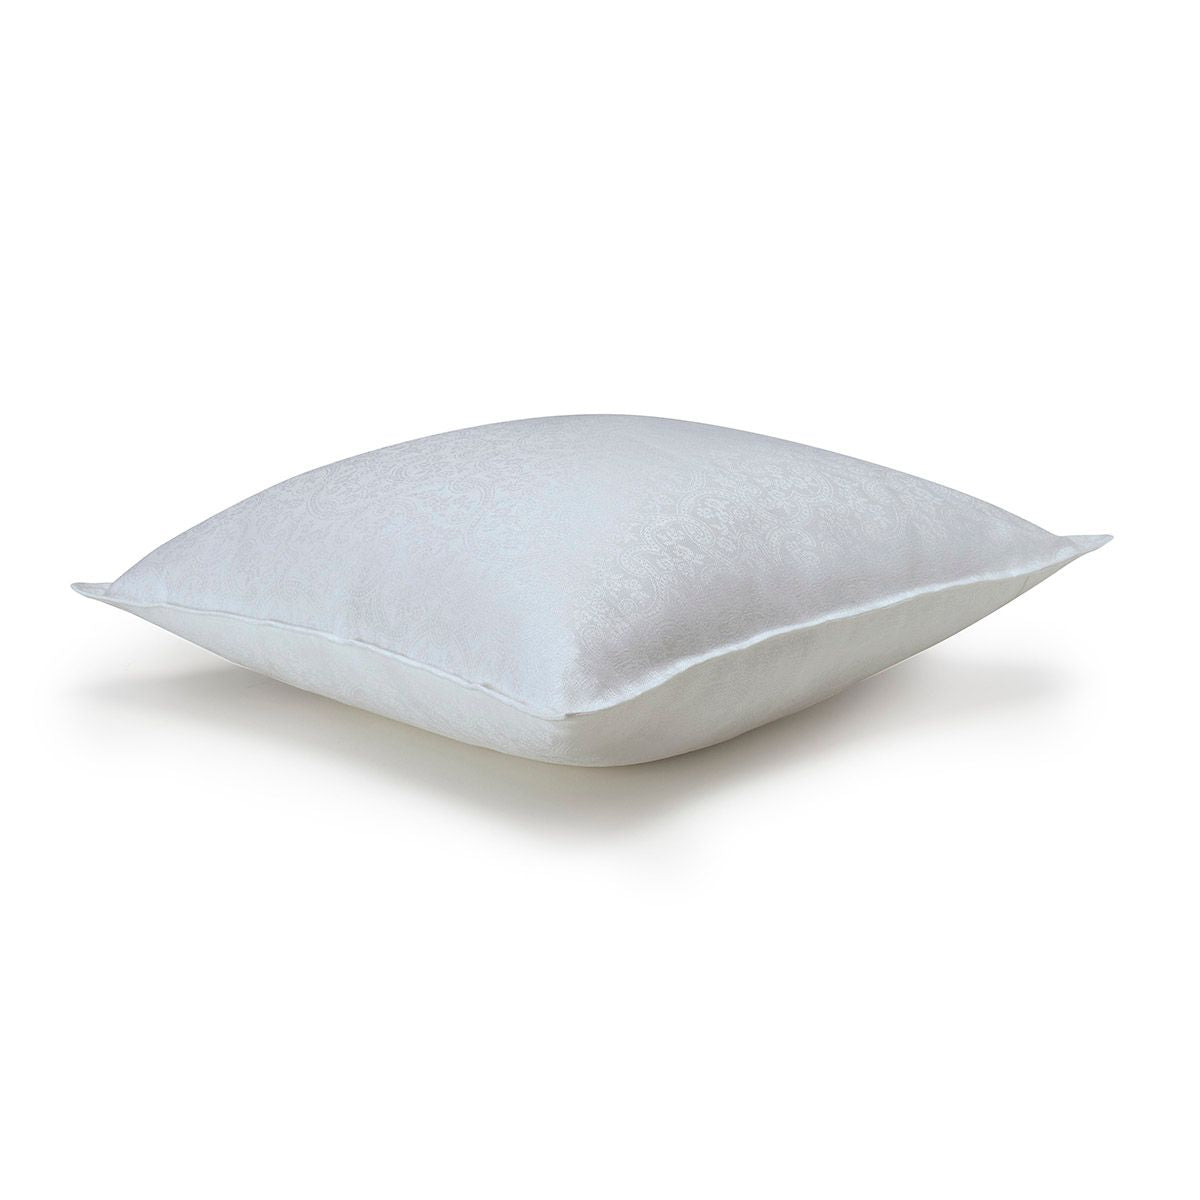 Portofino Fiori White Pillow by Le Jacquard Français | Fig Linens